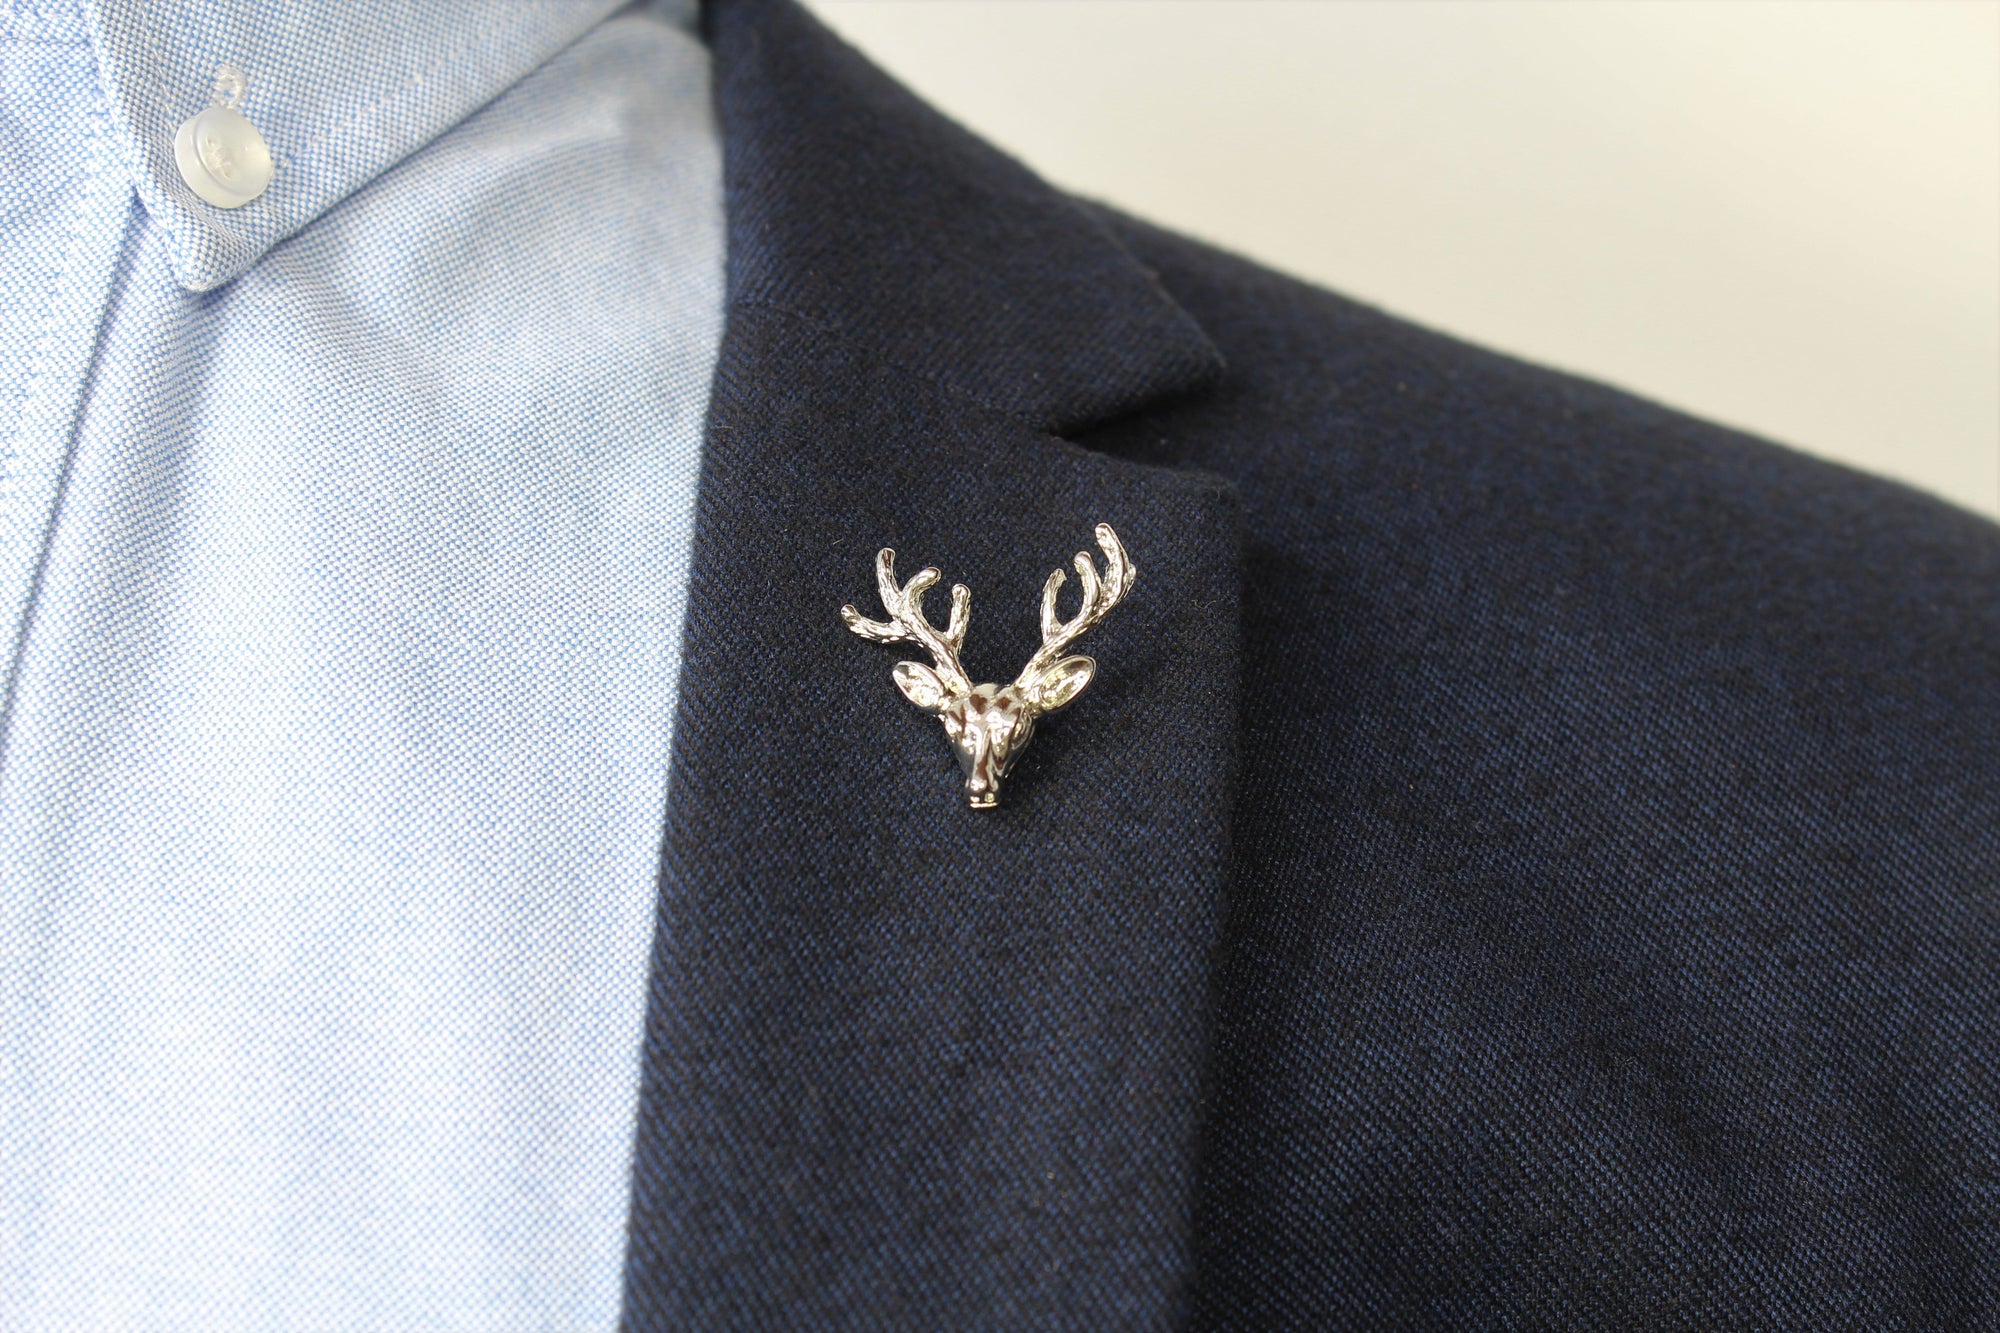 Deer Head Lapel Pin on blazer - Stolen Riches